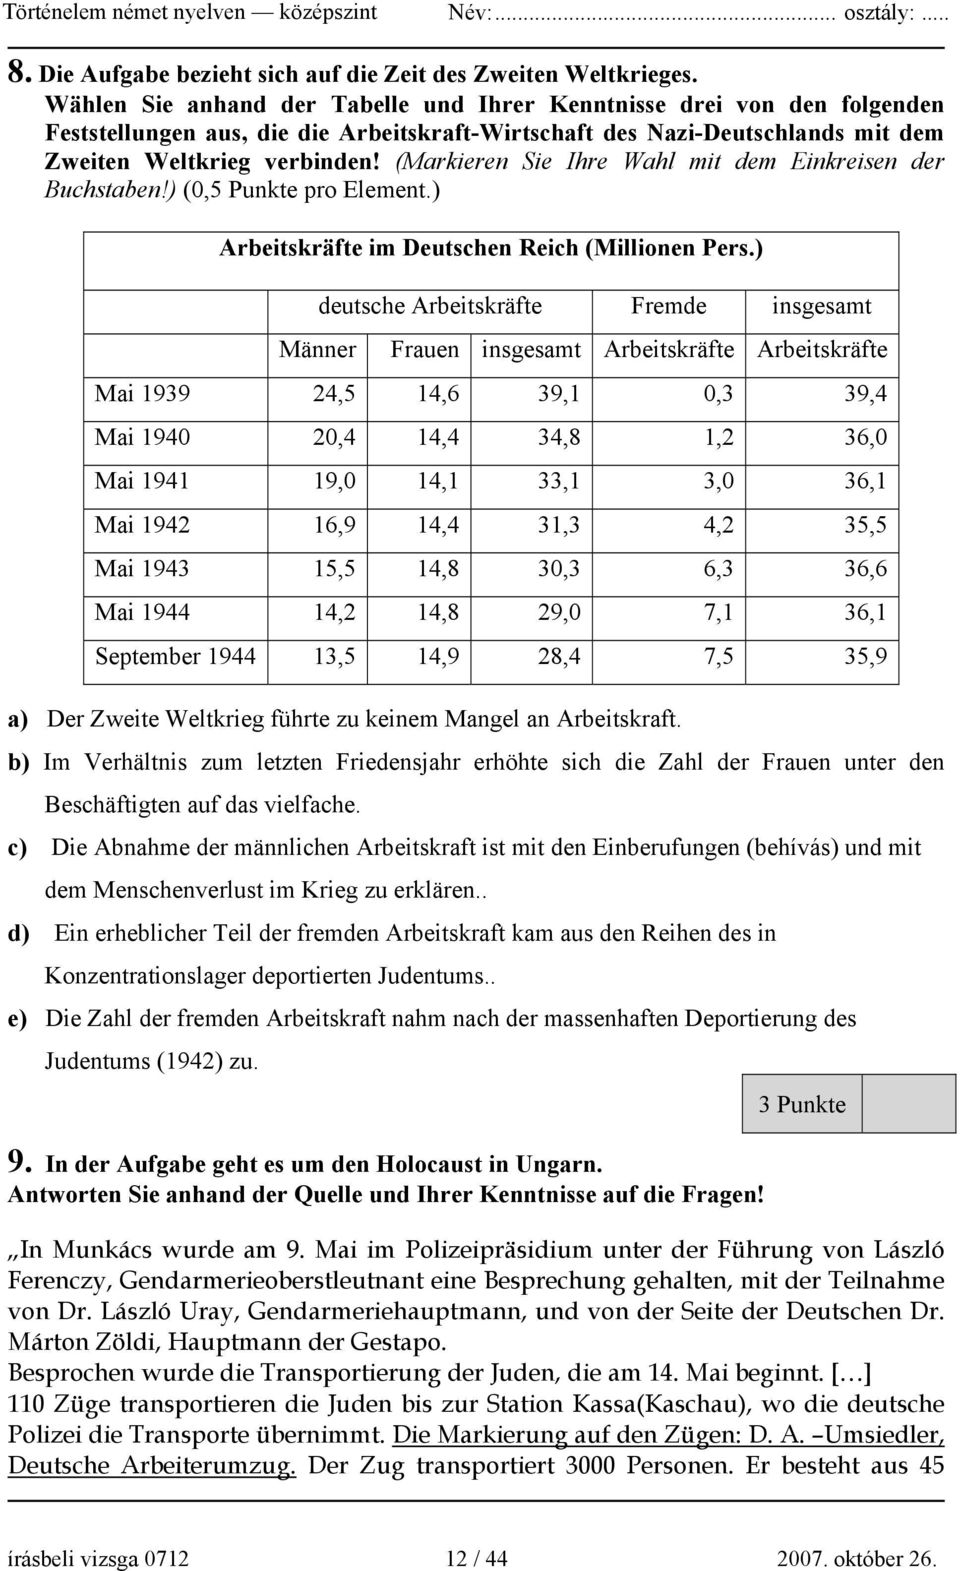 (Markieren Sie Ihre Wahl mit dem Einkreisen der Buchstaben!) (0,5 Punkte pro Element.) Arbeitskräfte im Deutschen Reich (Millionen Pers.